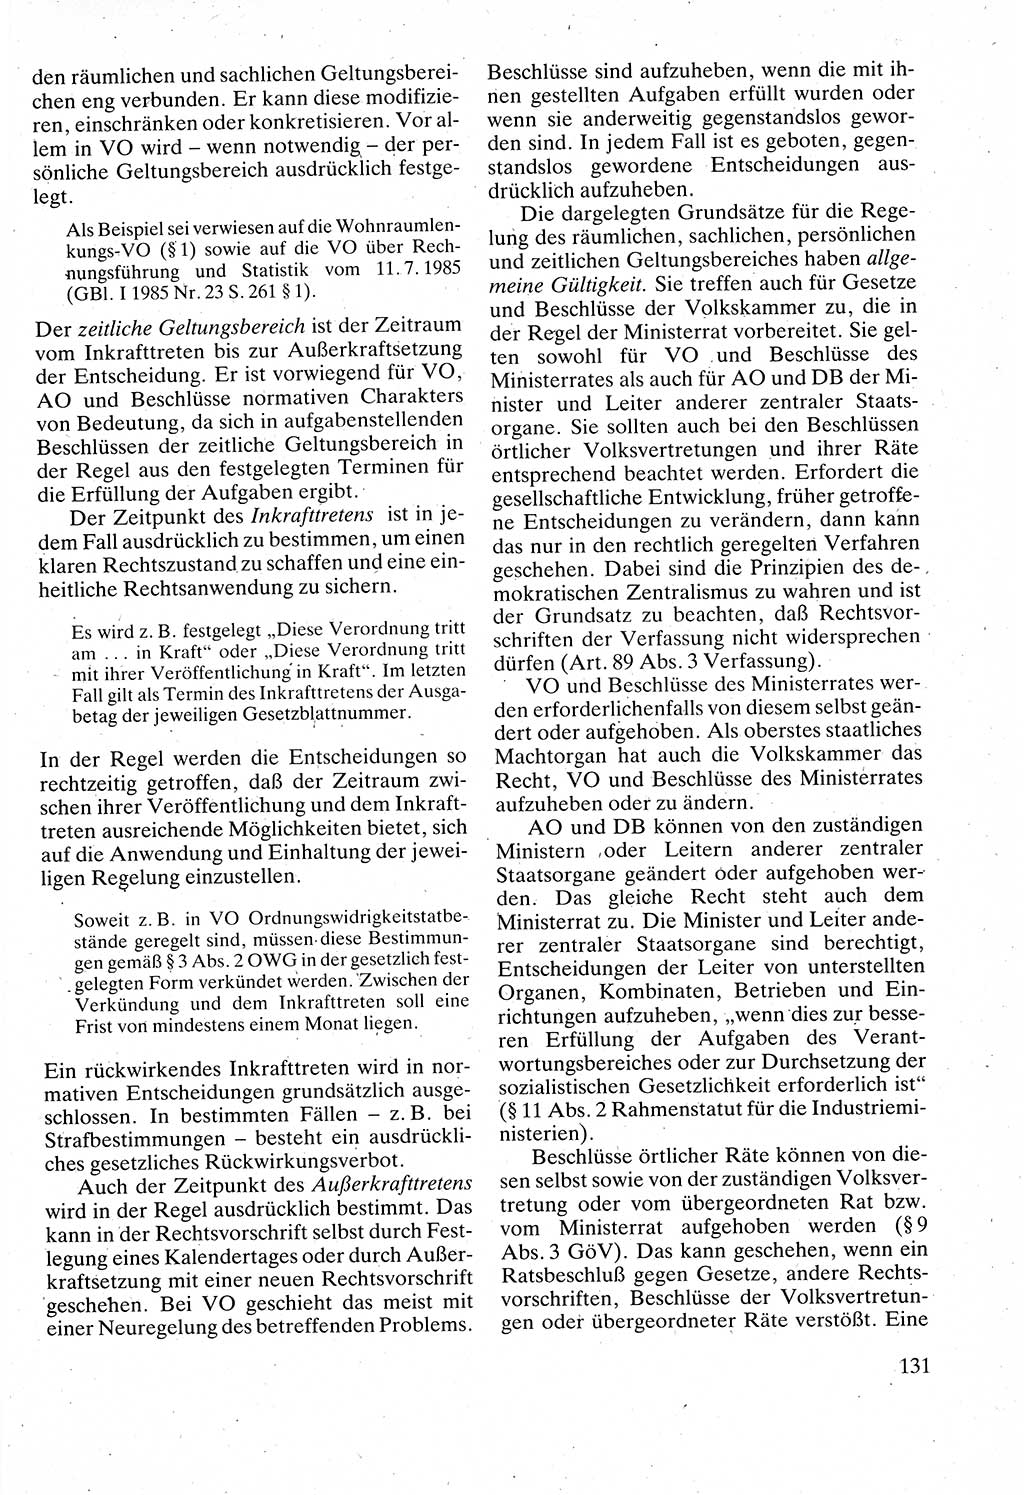 Verwaltungsrecht [Deutsche Demokratische Republik (DDR)], Lehrbuch 1988, Seite 131 (Verw.-R. DDR Lb. 1988, S. 131)